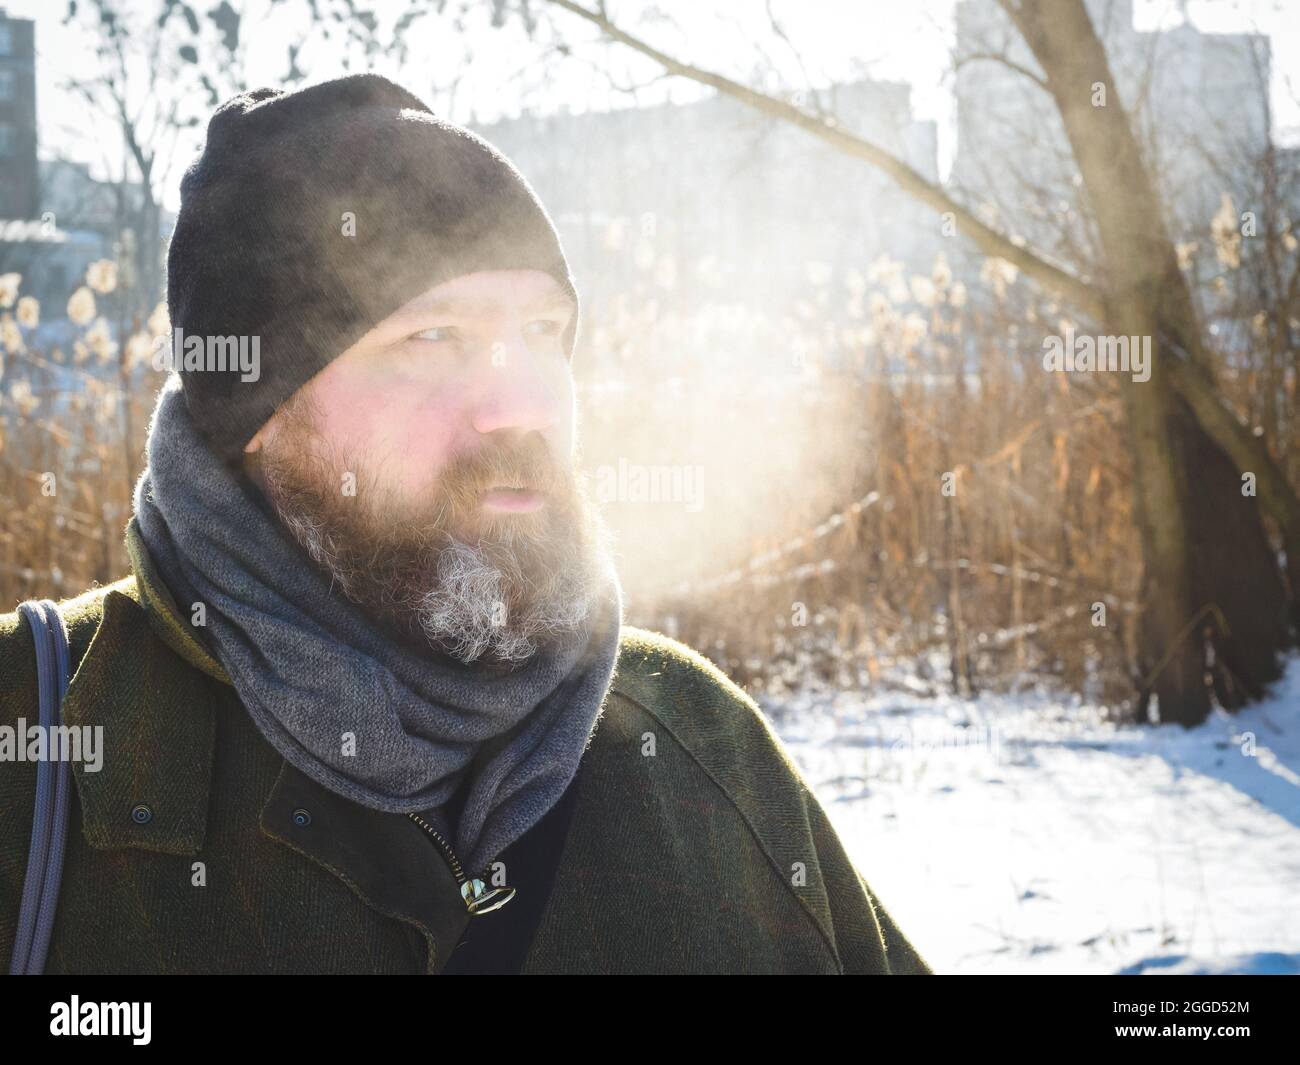 L'uomo respira aria fredda invernale in un parco. Uomo bearded che si distende sulla passeggiata di inverno nella foresta nevosa, cattura candid, scena di lifestyle Foto Stock